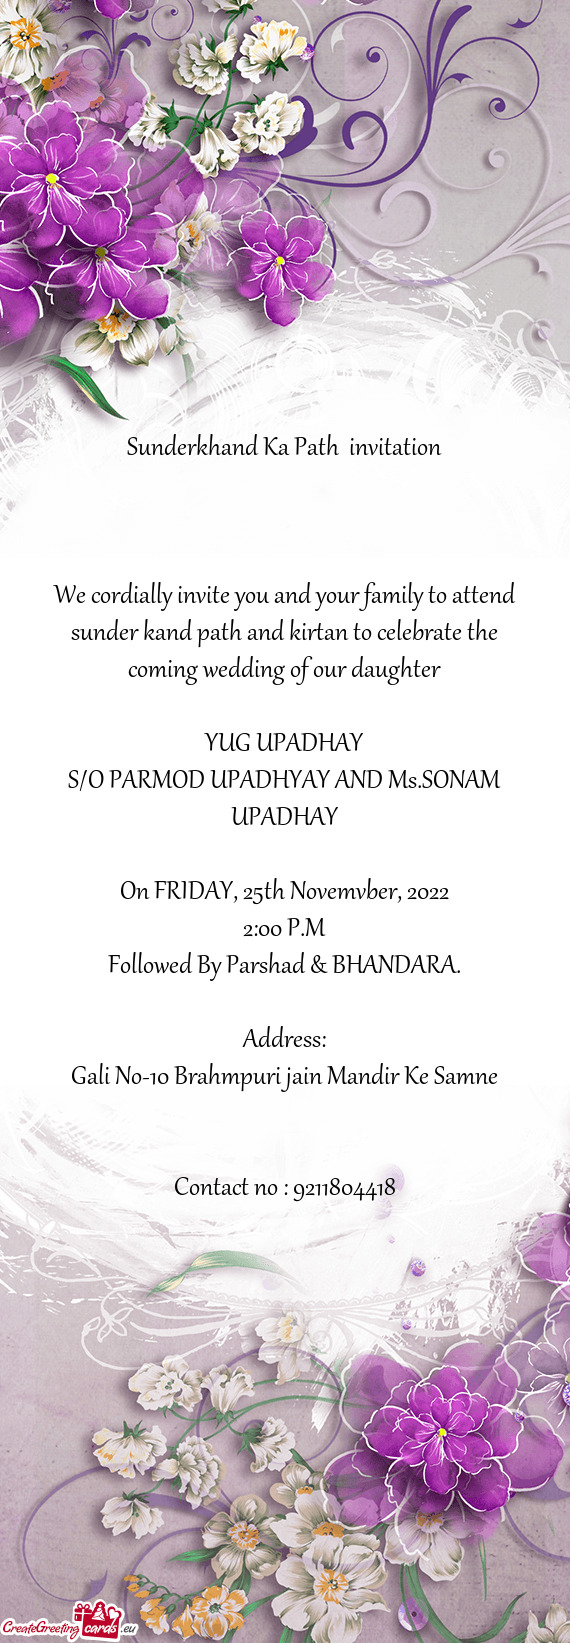 Sunderkhand Ka Path invitation